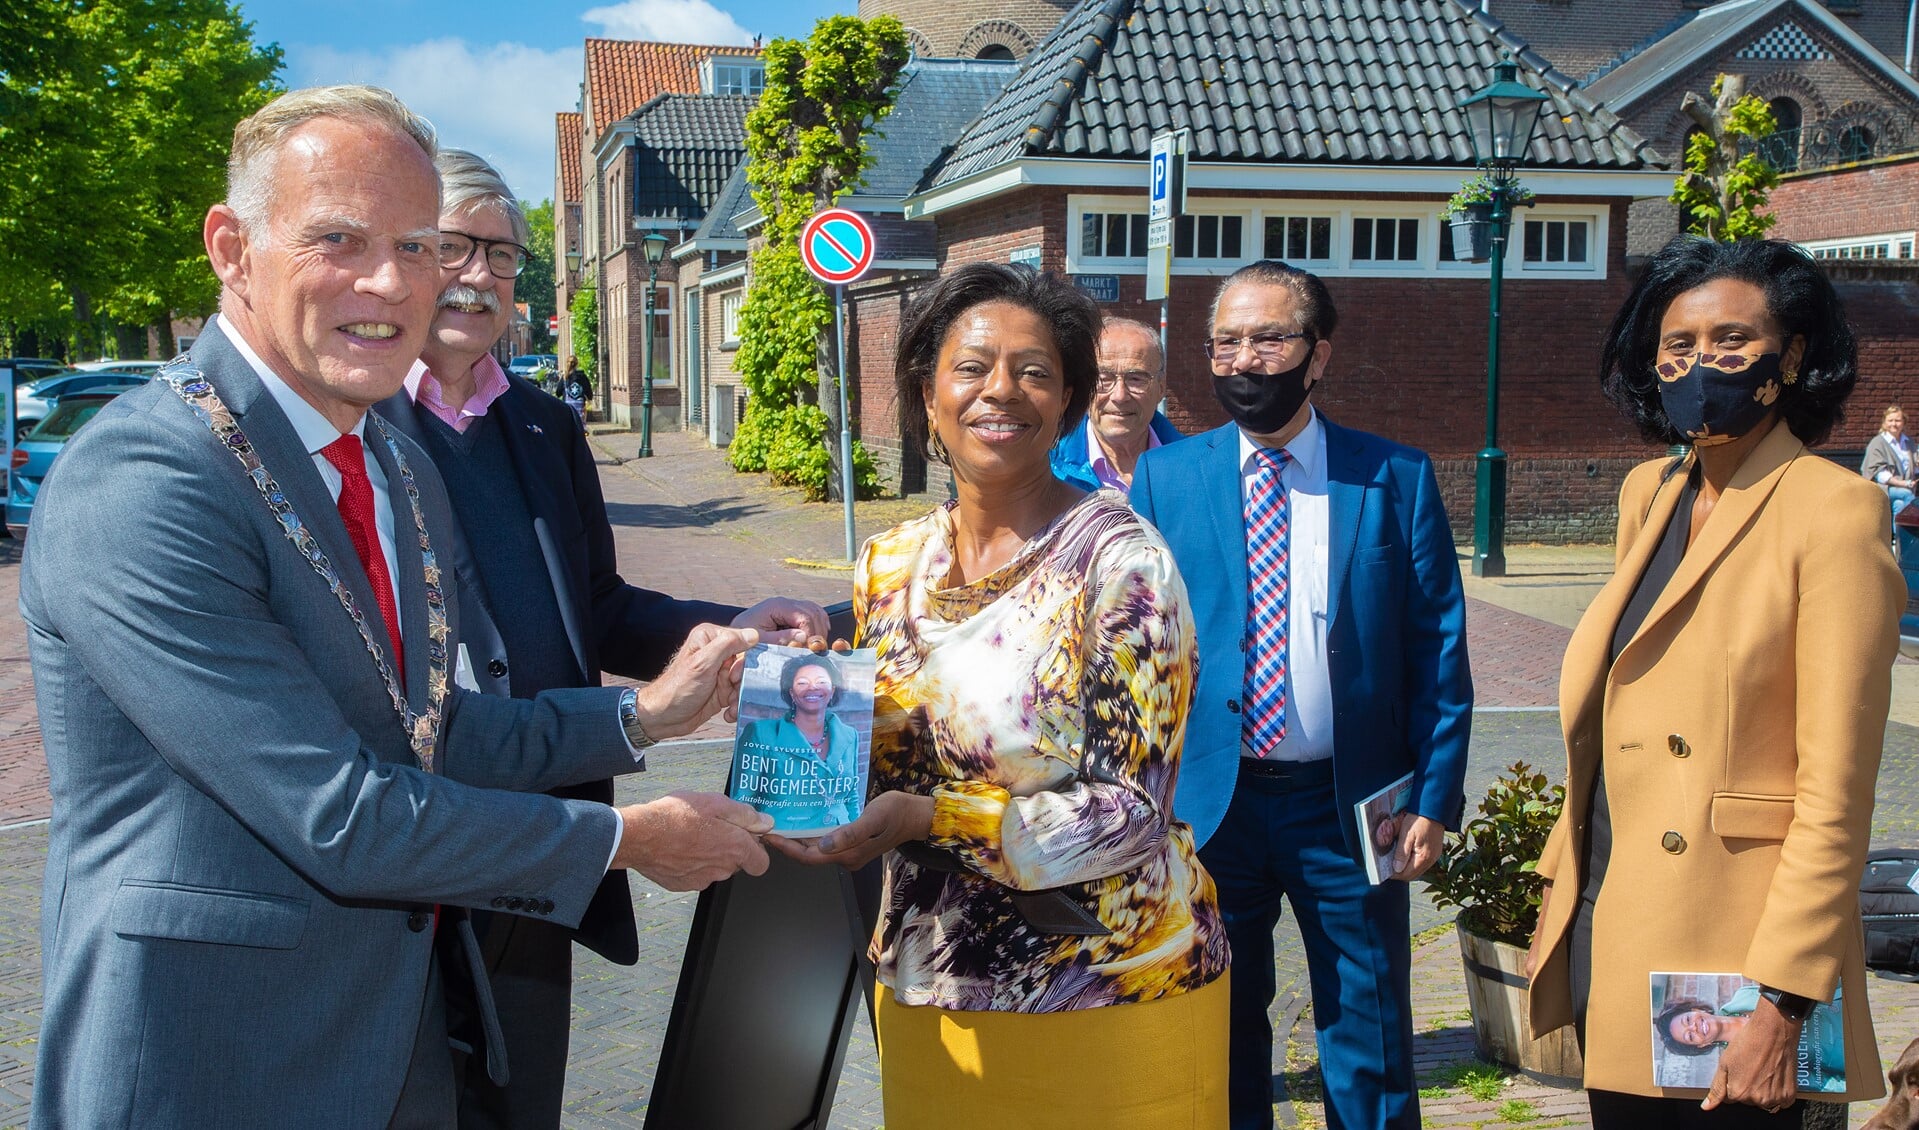 De huidige burgemeester Han ter Heegde overhandigde het eerste exemplaar van het boek aan de oud-burgemeester.